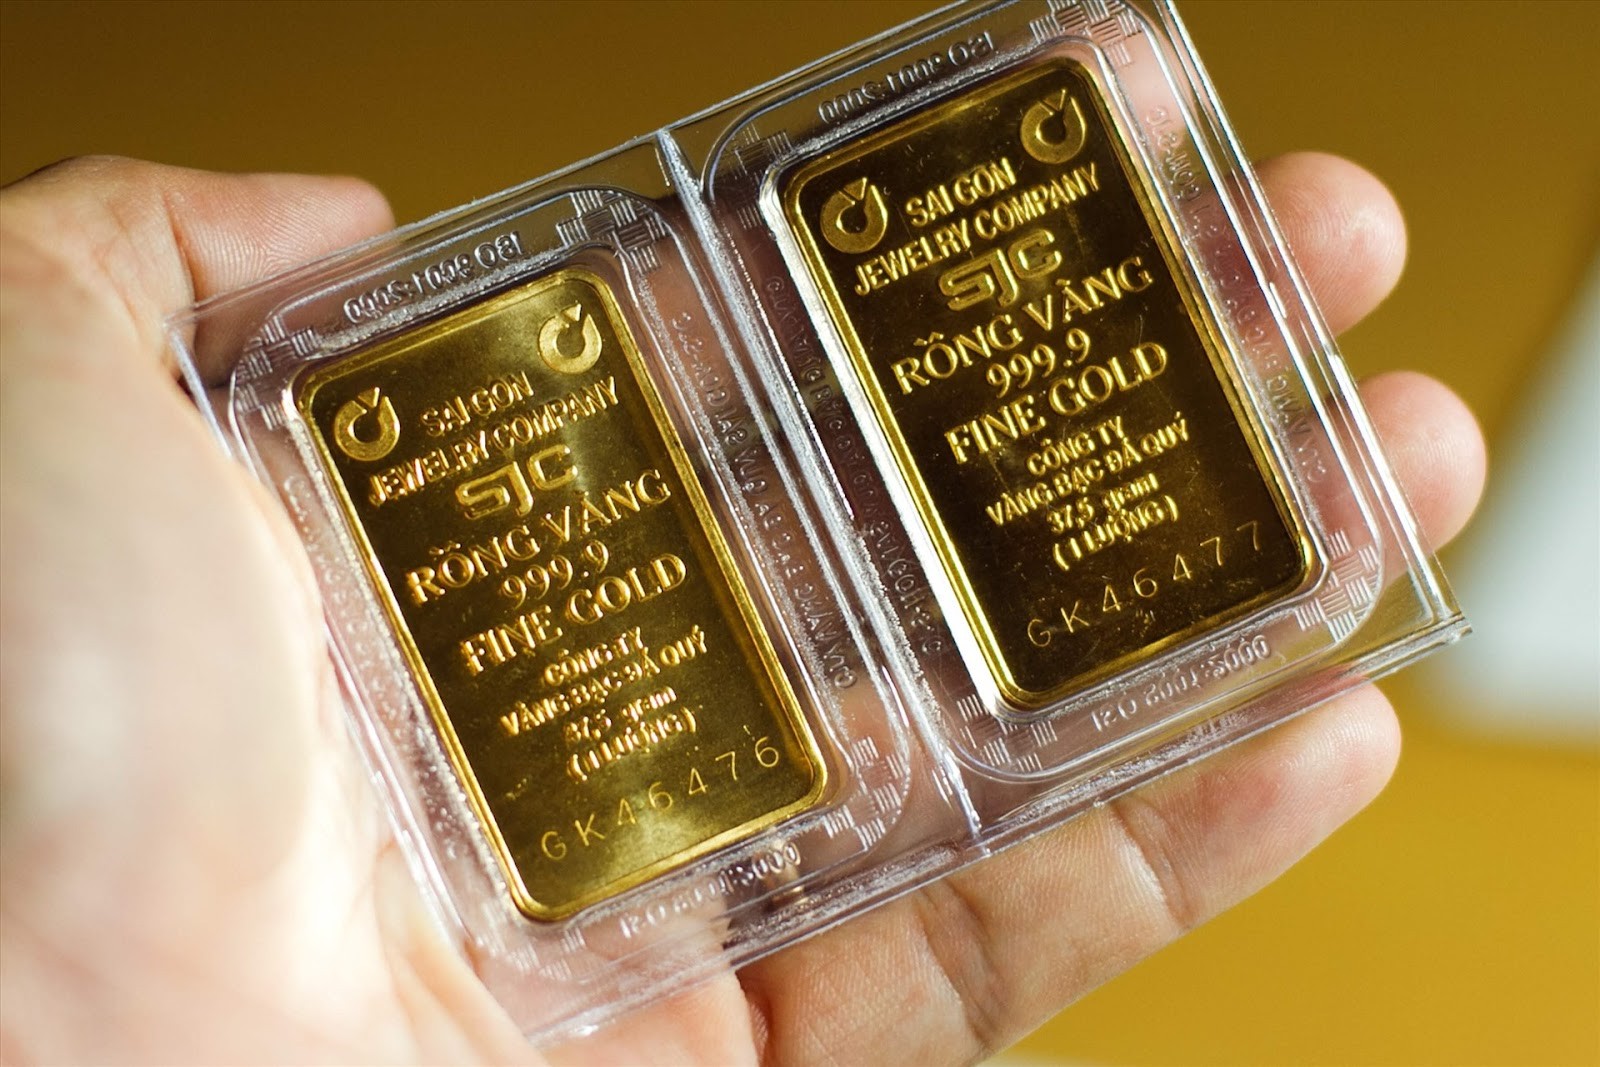 
Vàng ròng là loại vàng có giá trị nhất trên thị trường hiện nay để đầu tư
